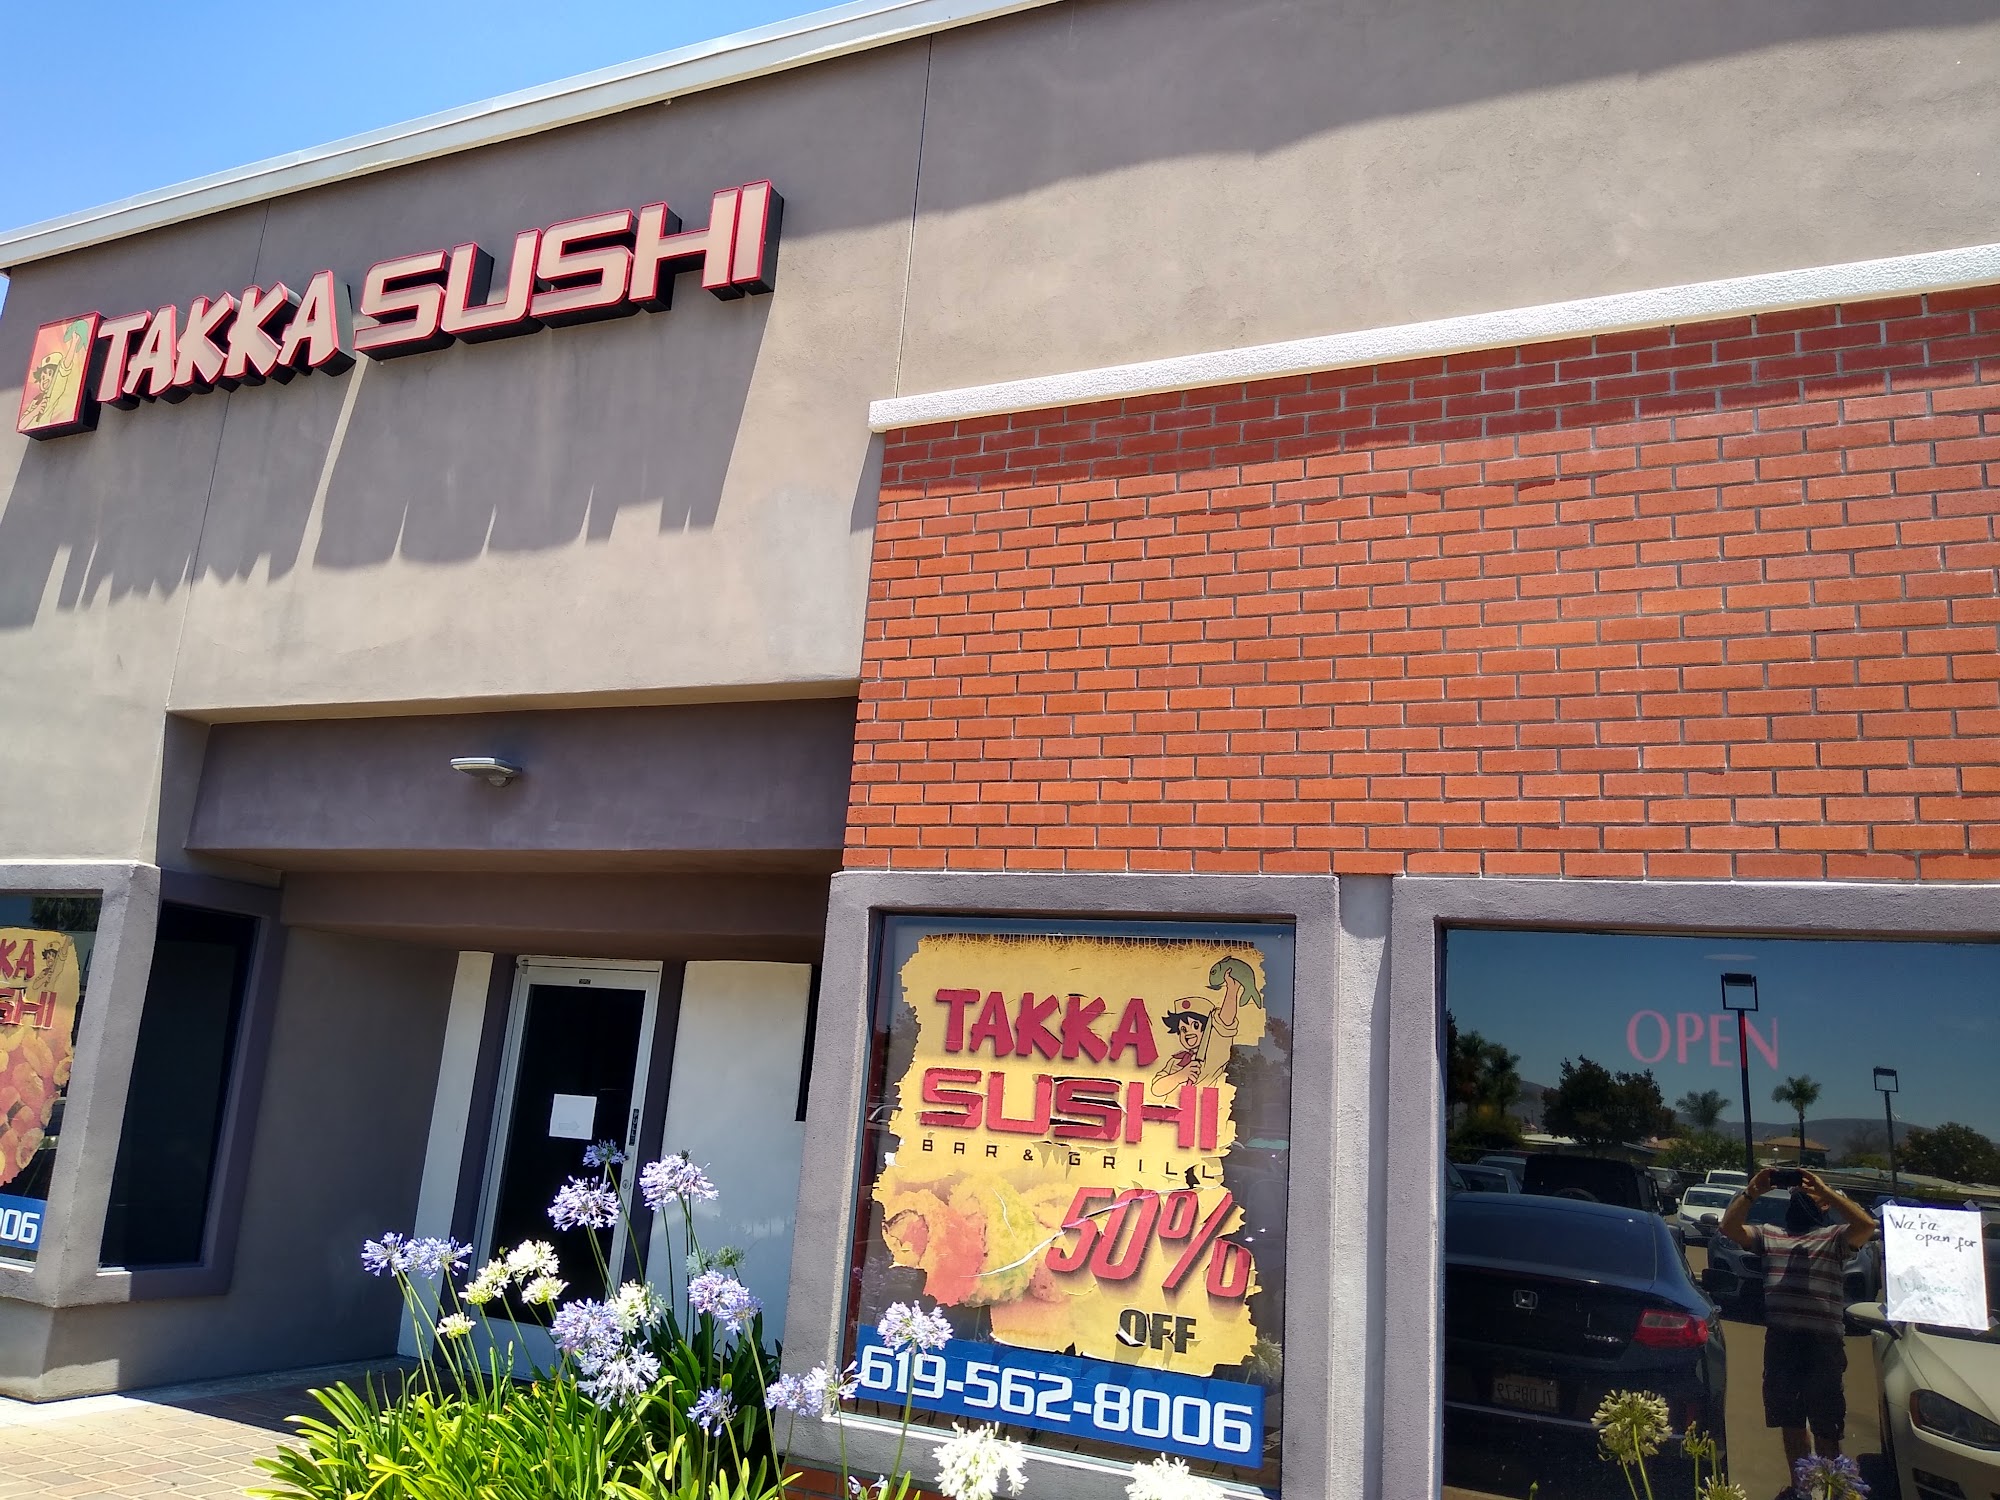 Takka Sushi Bar & Grill